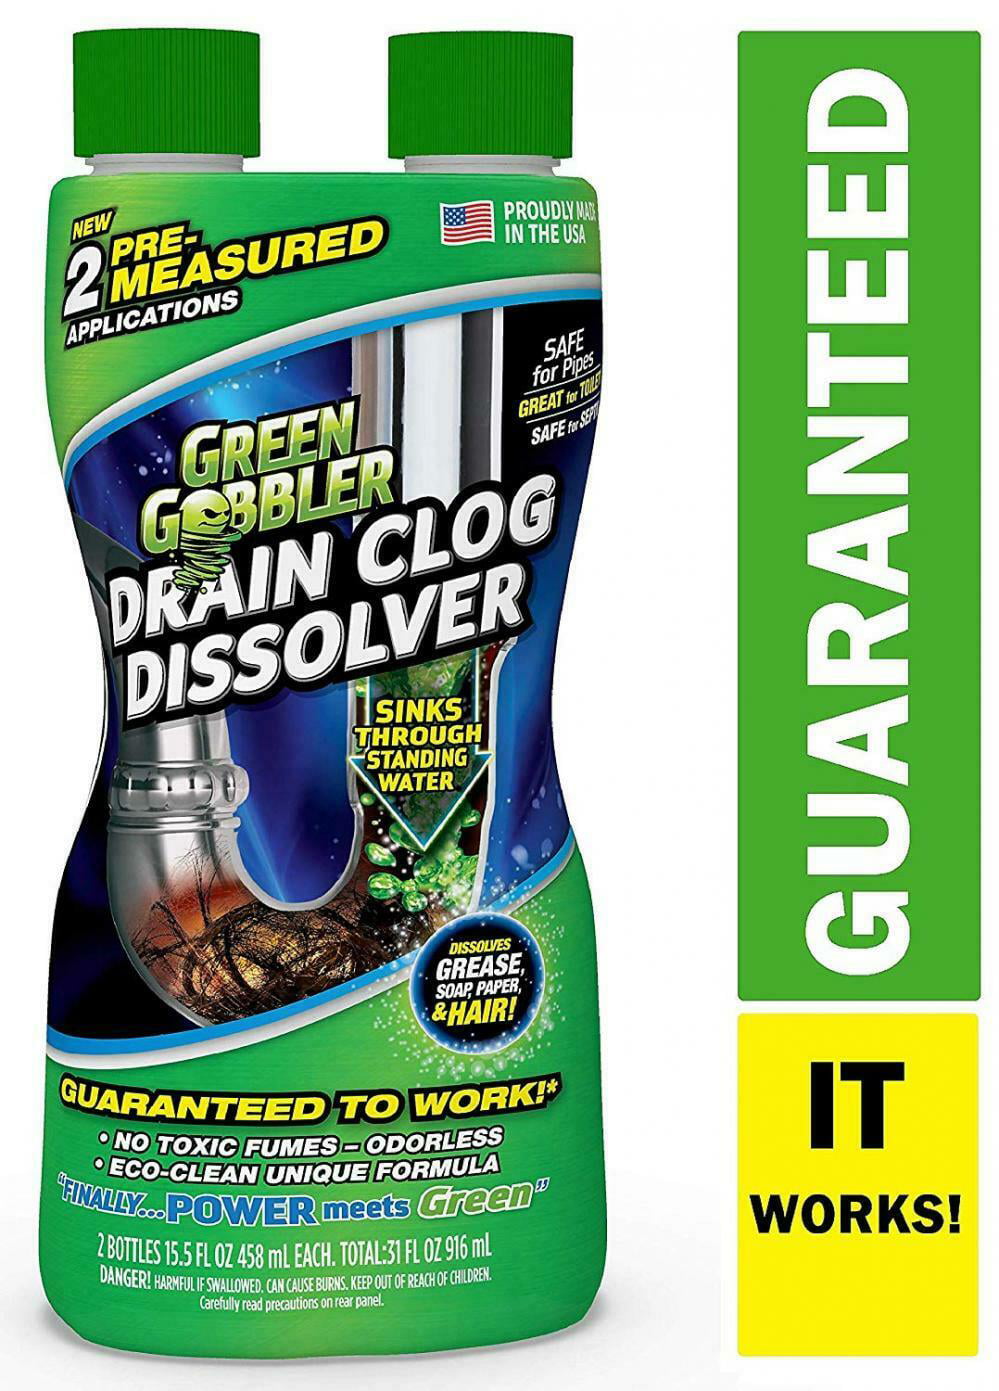 Green Gobbler Ggdis2ch32 Dissolve, How To Dissolve Hair In Bathtub Drain